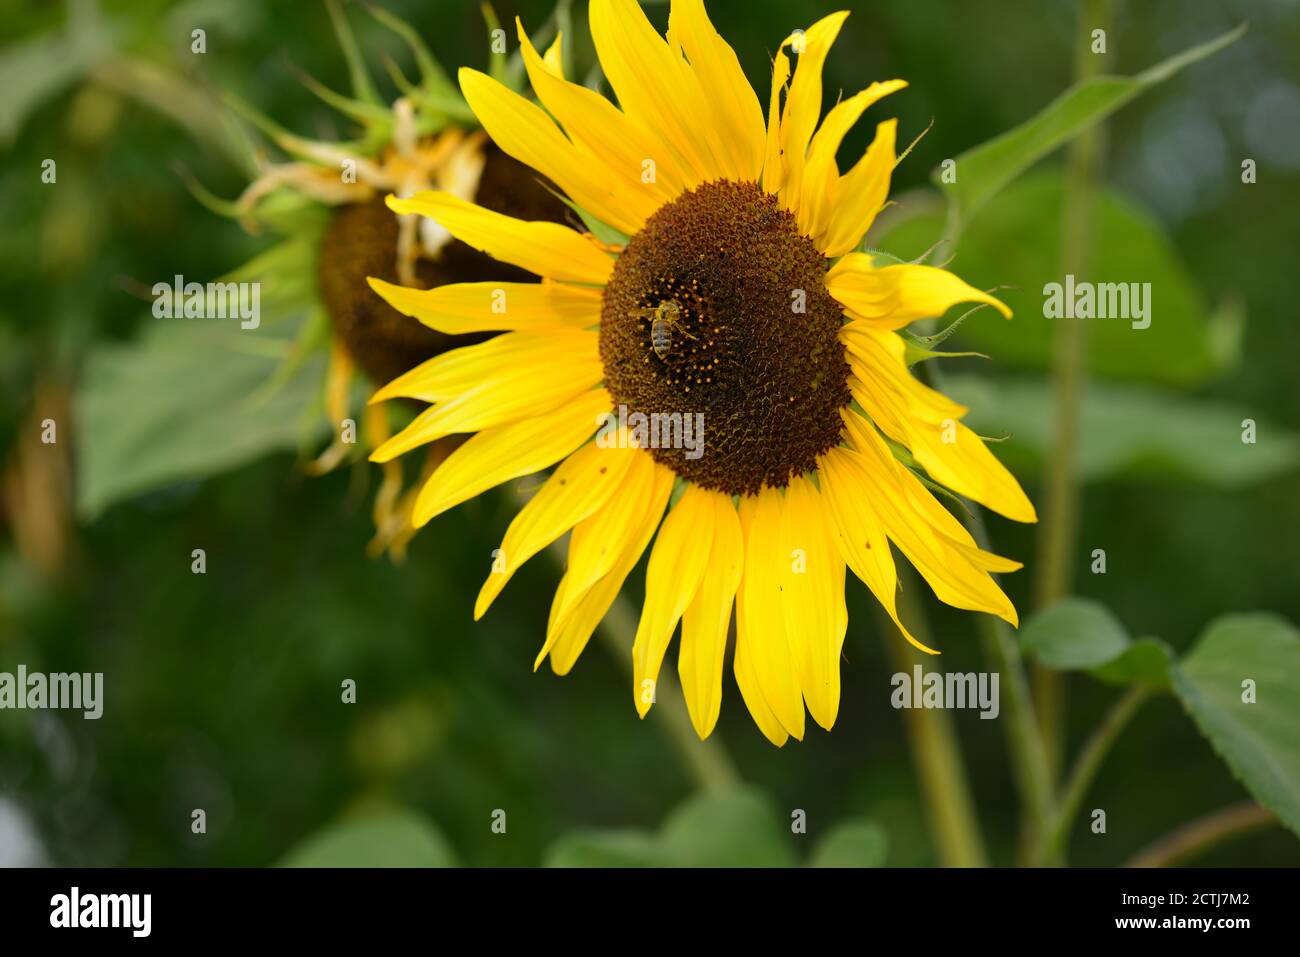 Plantar semillas de girasol fotografías e imágenes de alta resolución -  Página 9 - Alamy